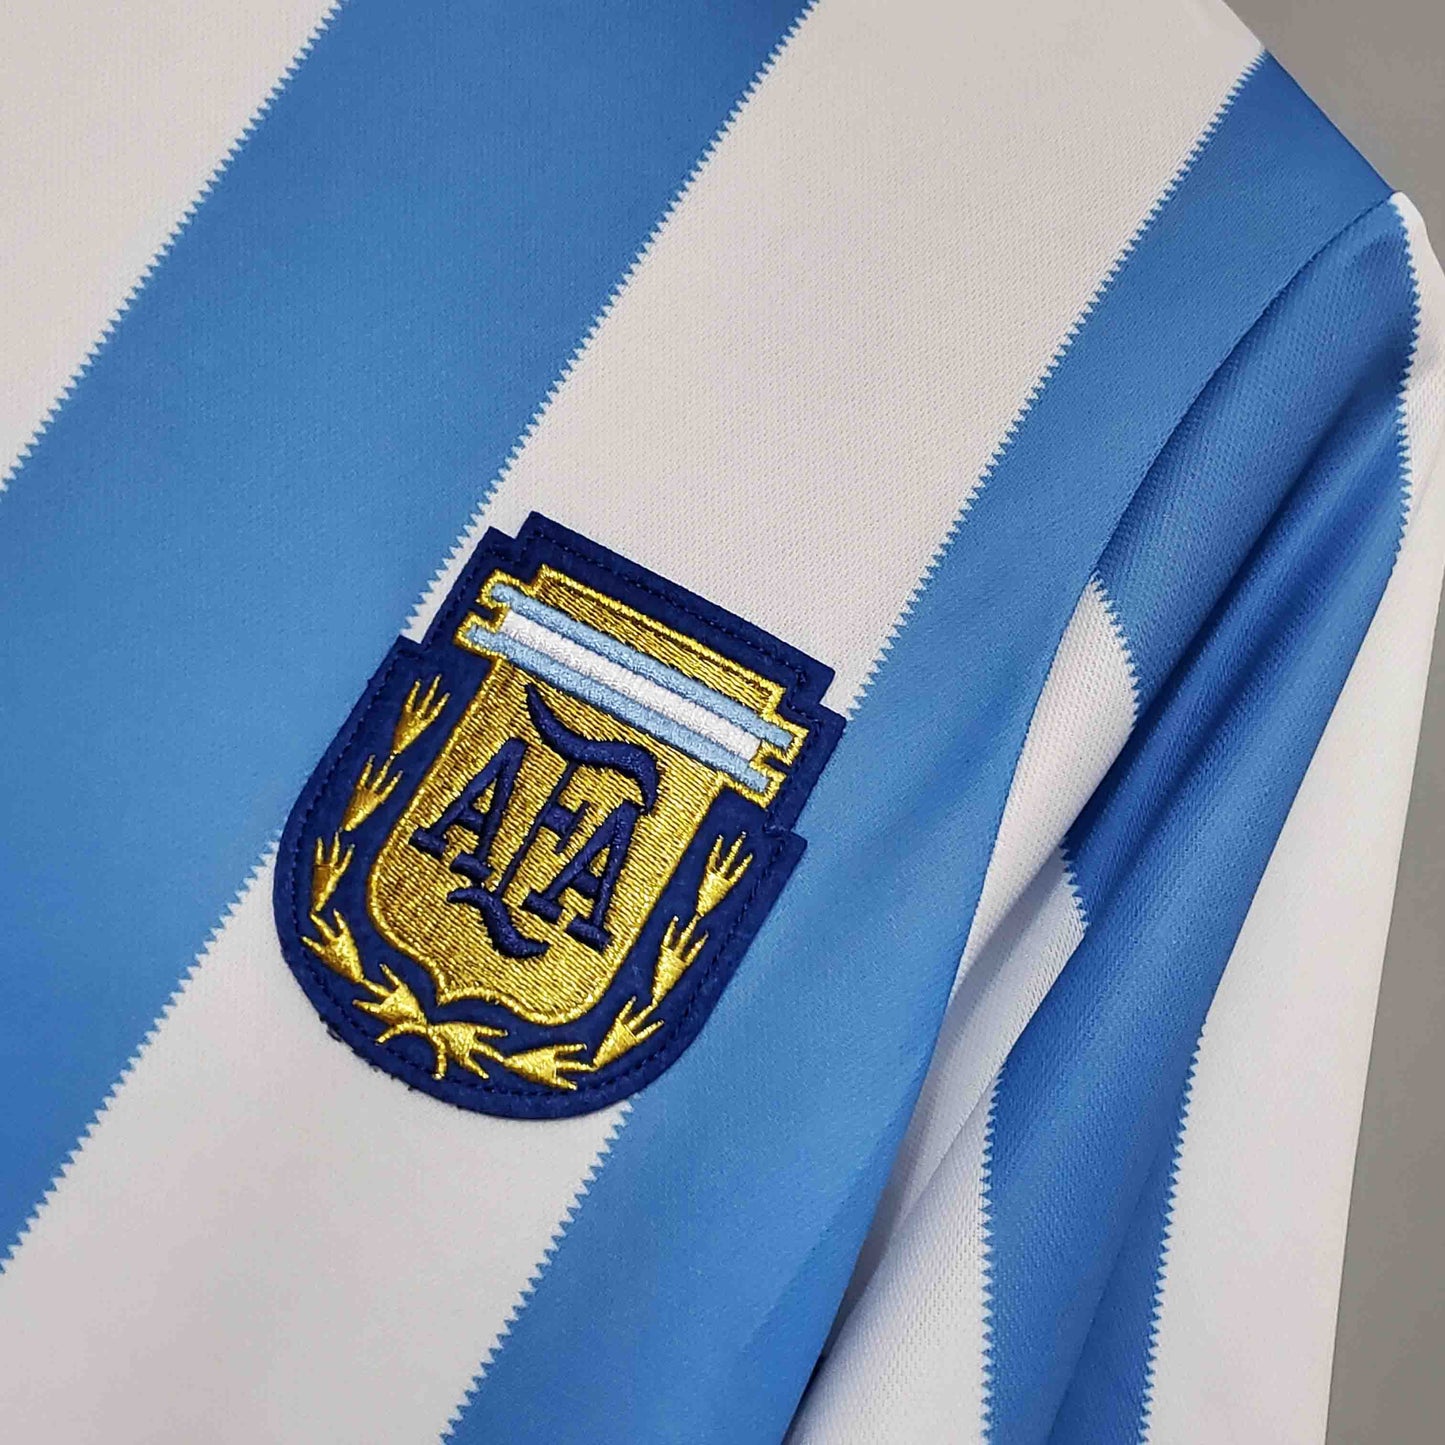 Argentina 86 Maradona